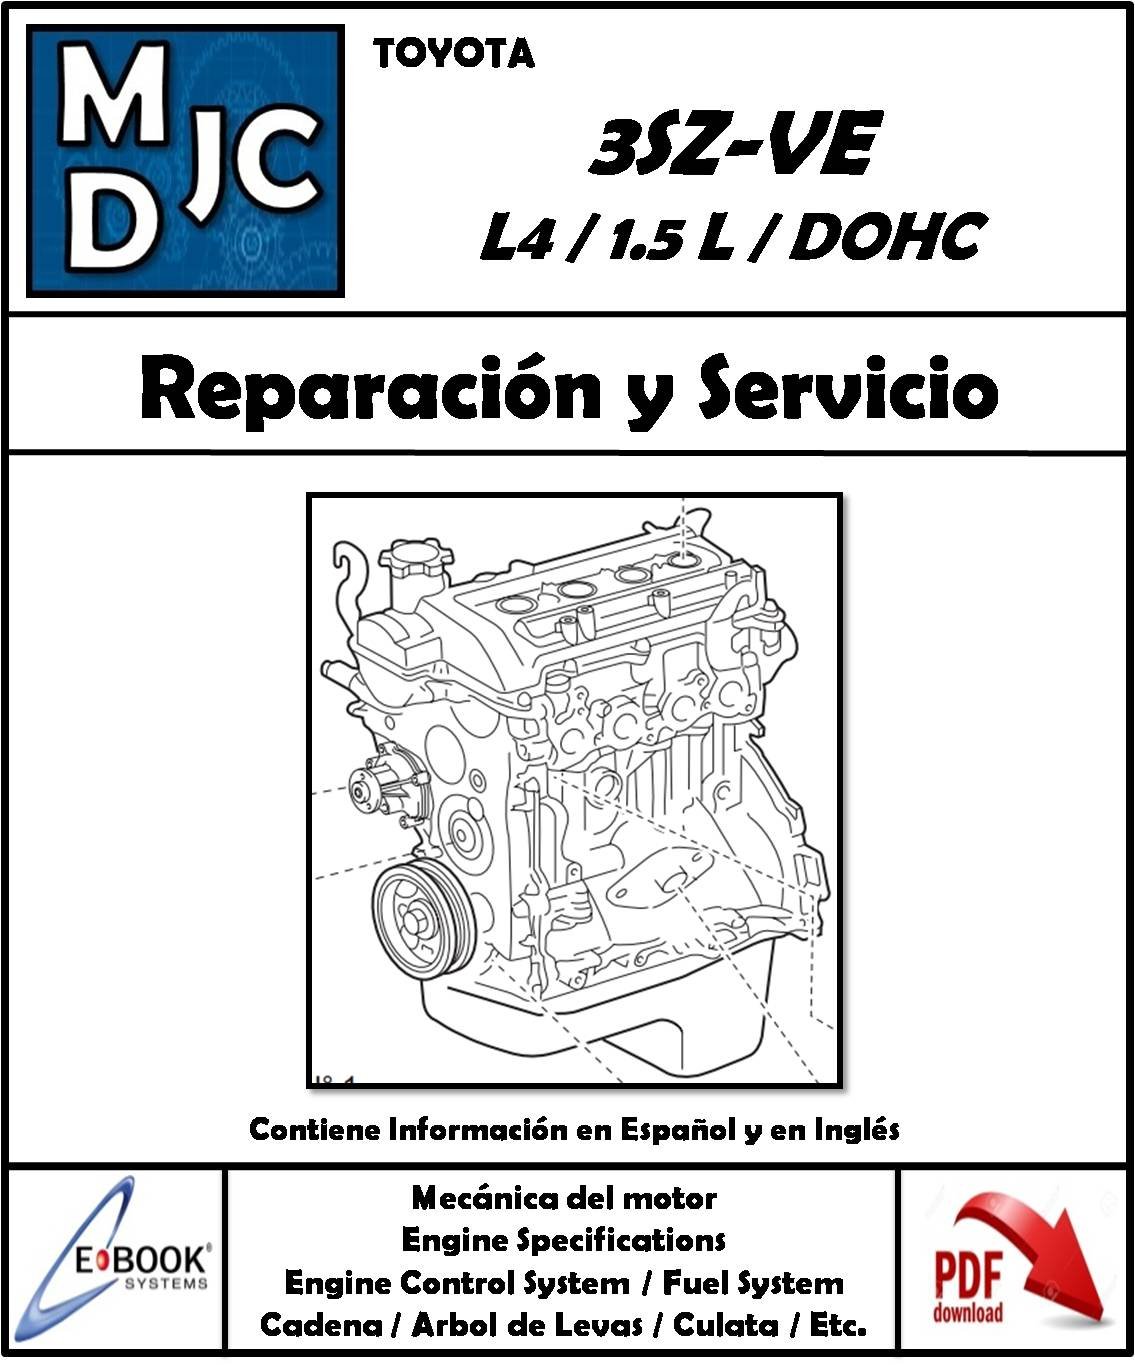 Manual de Taller (Reparación y Control) Motor Toyota Daihatsu 3SZ-VE